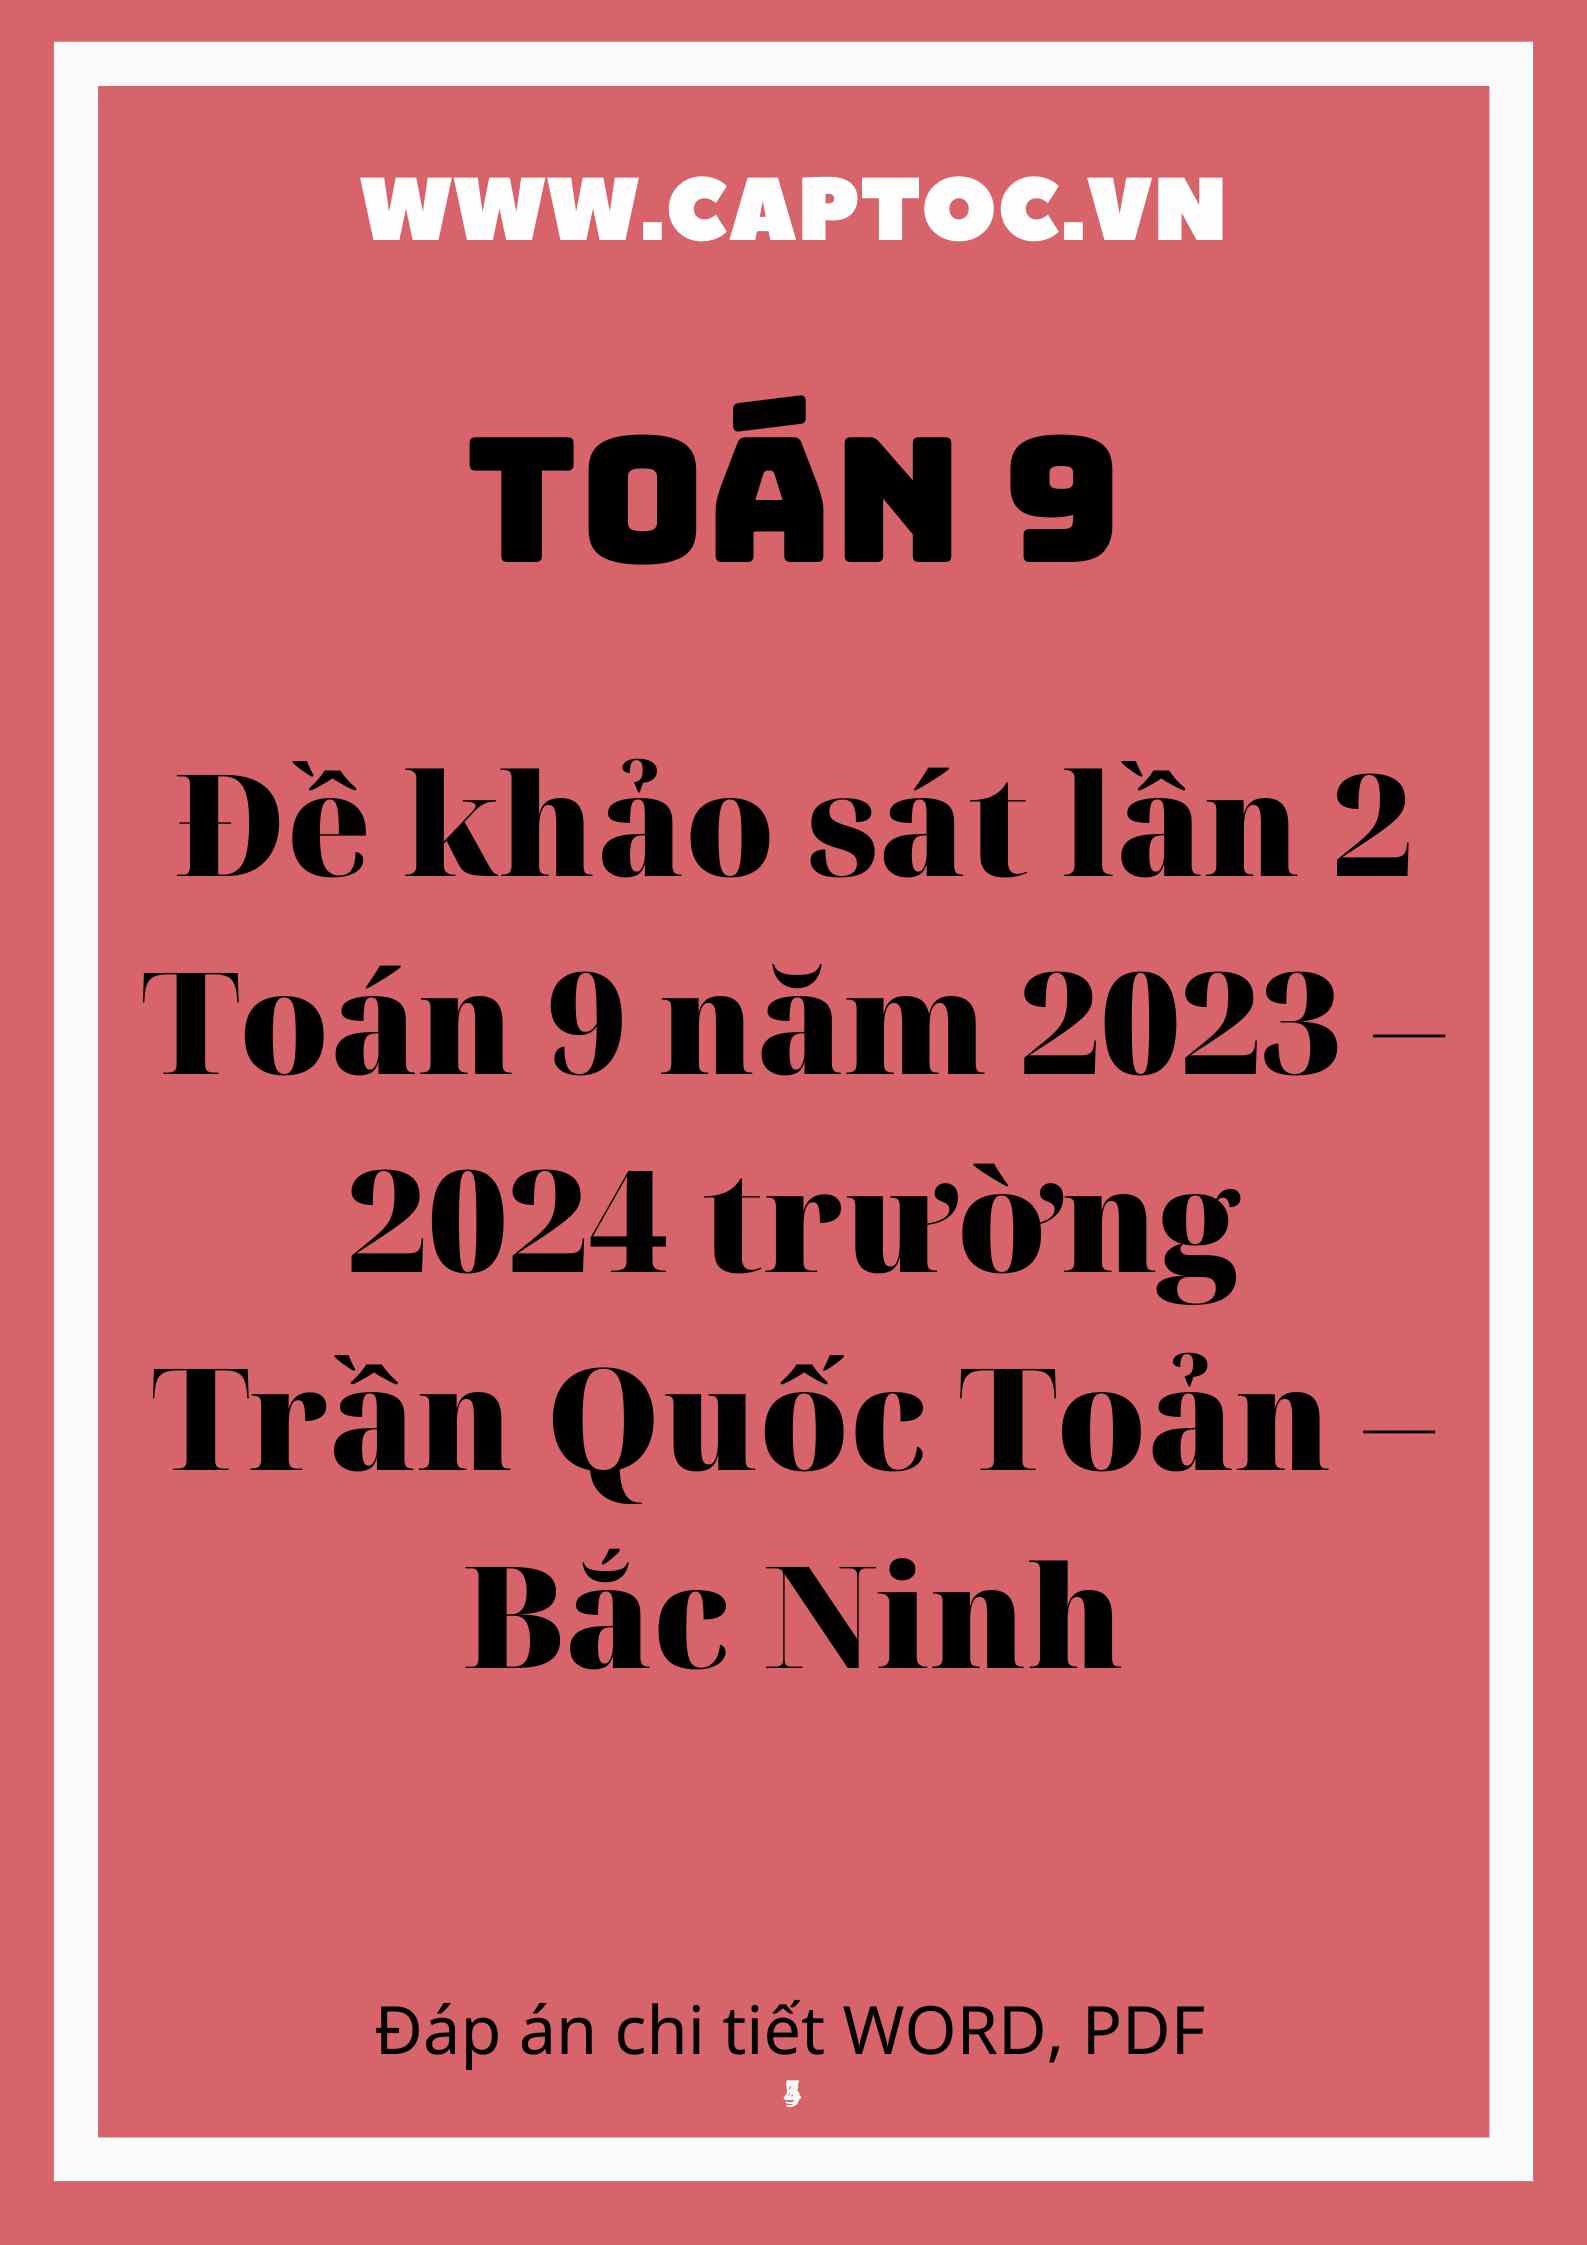 Đề khảo sát lần 2 Toán 9 năm 2023 – 2024 trường Trần Quốc Toản – Bắc Ninh